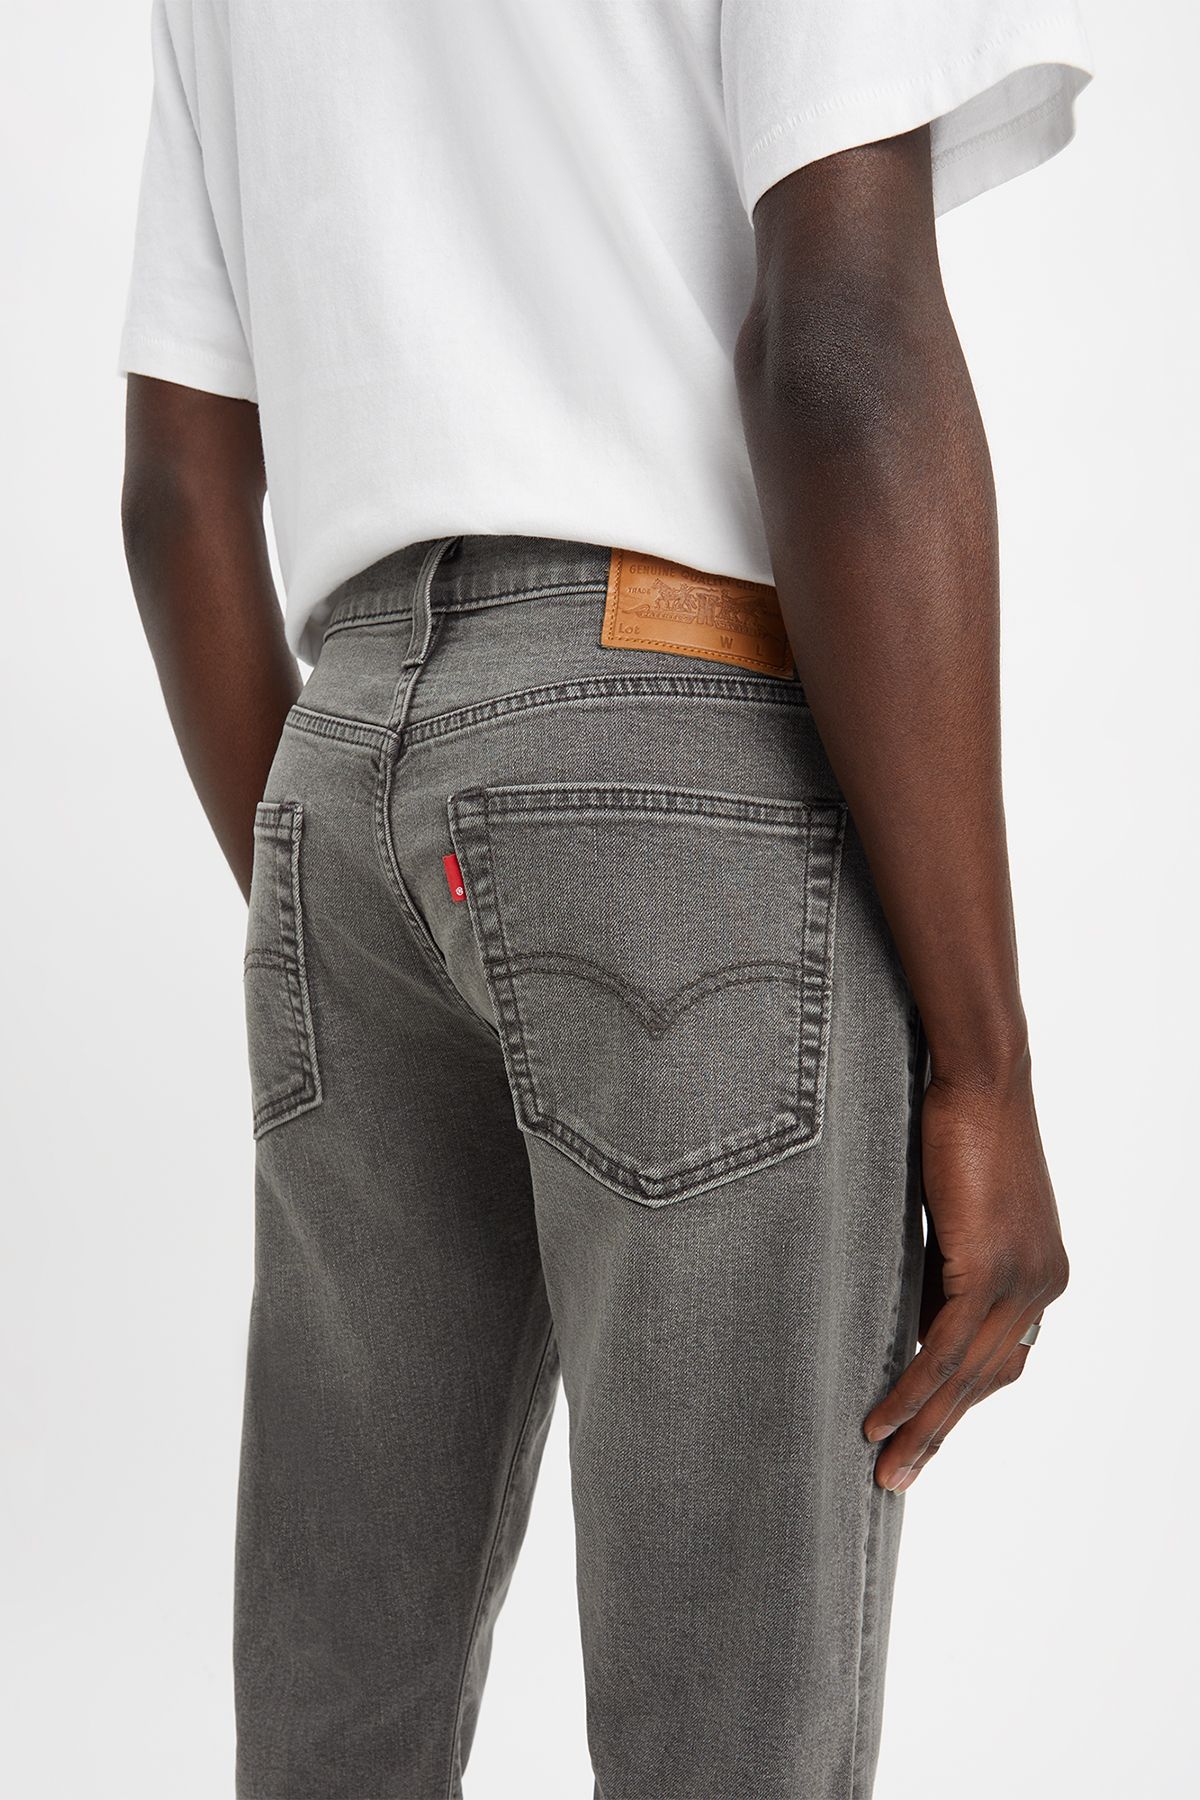 Levi's Levi's Men's 512 Slim Taper Jeans Grey Men